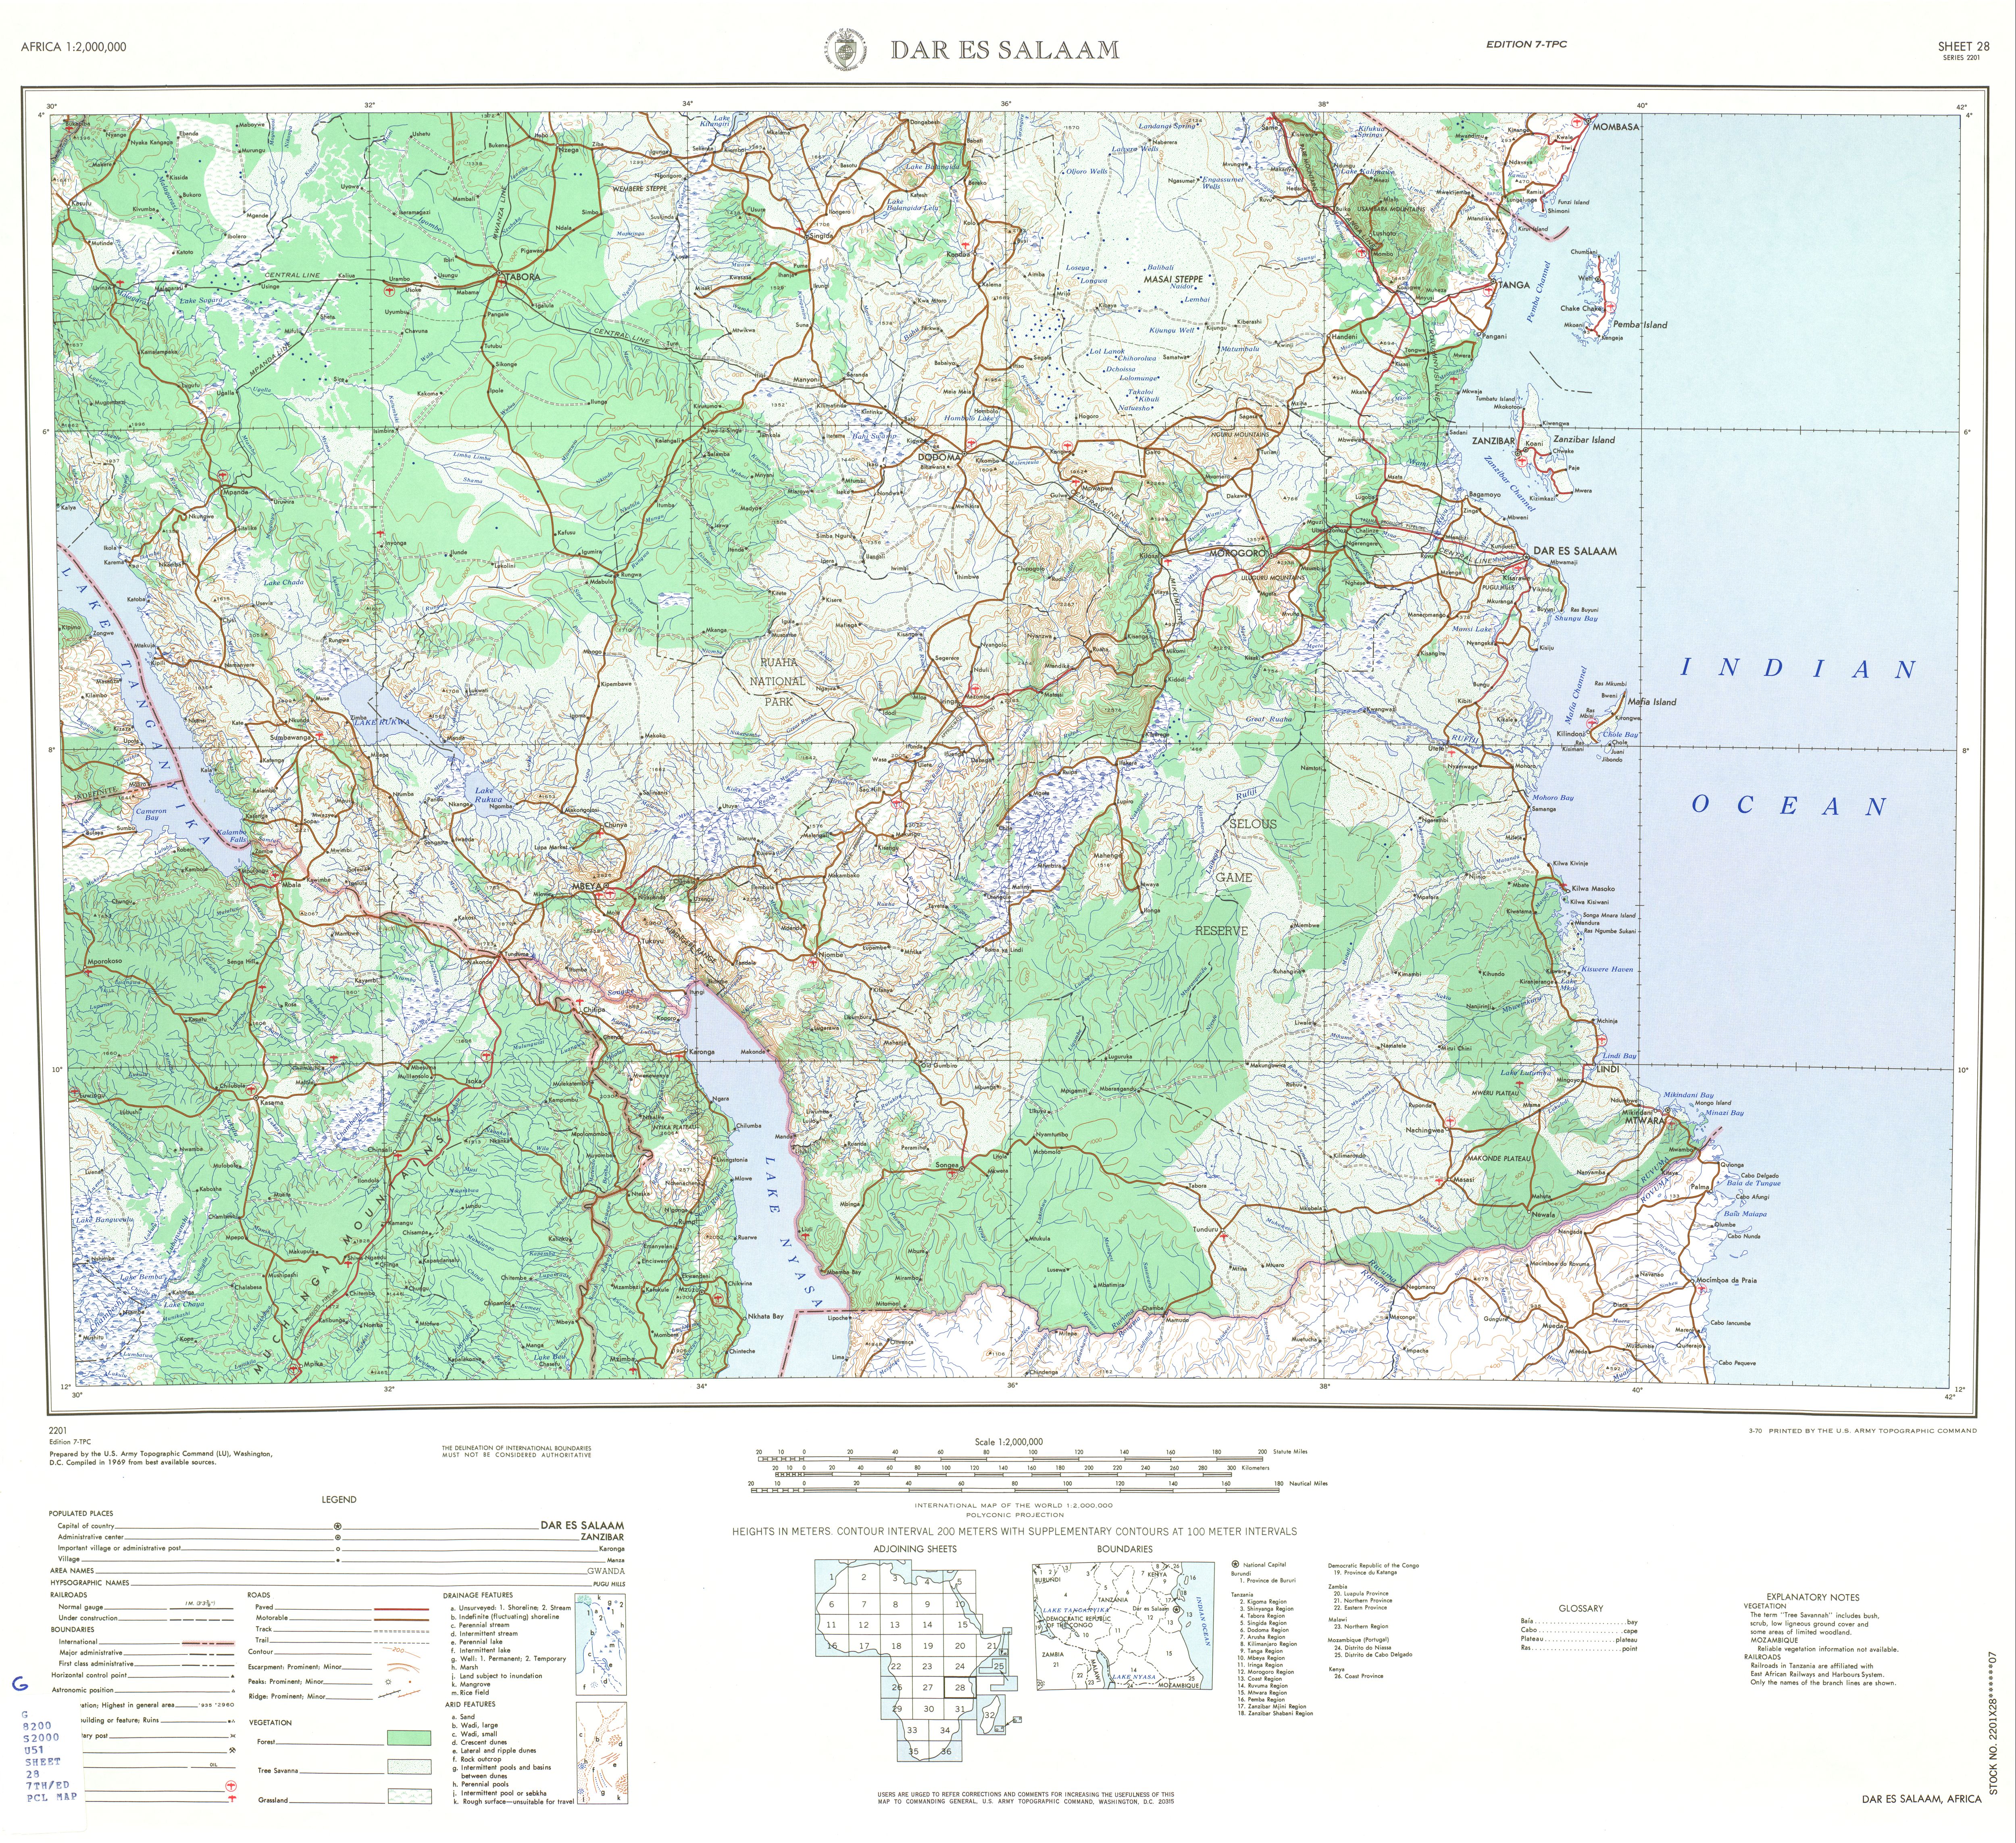 Hoja Dar es Salaam del Mapa Topográfico de África 1969